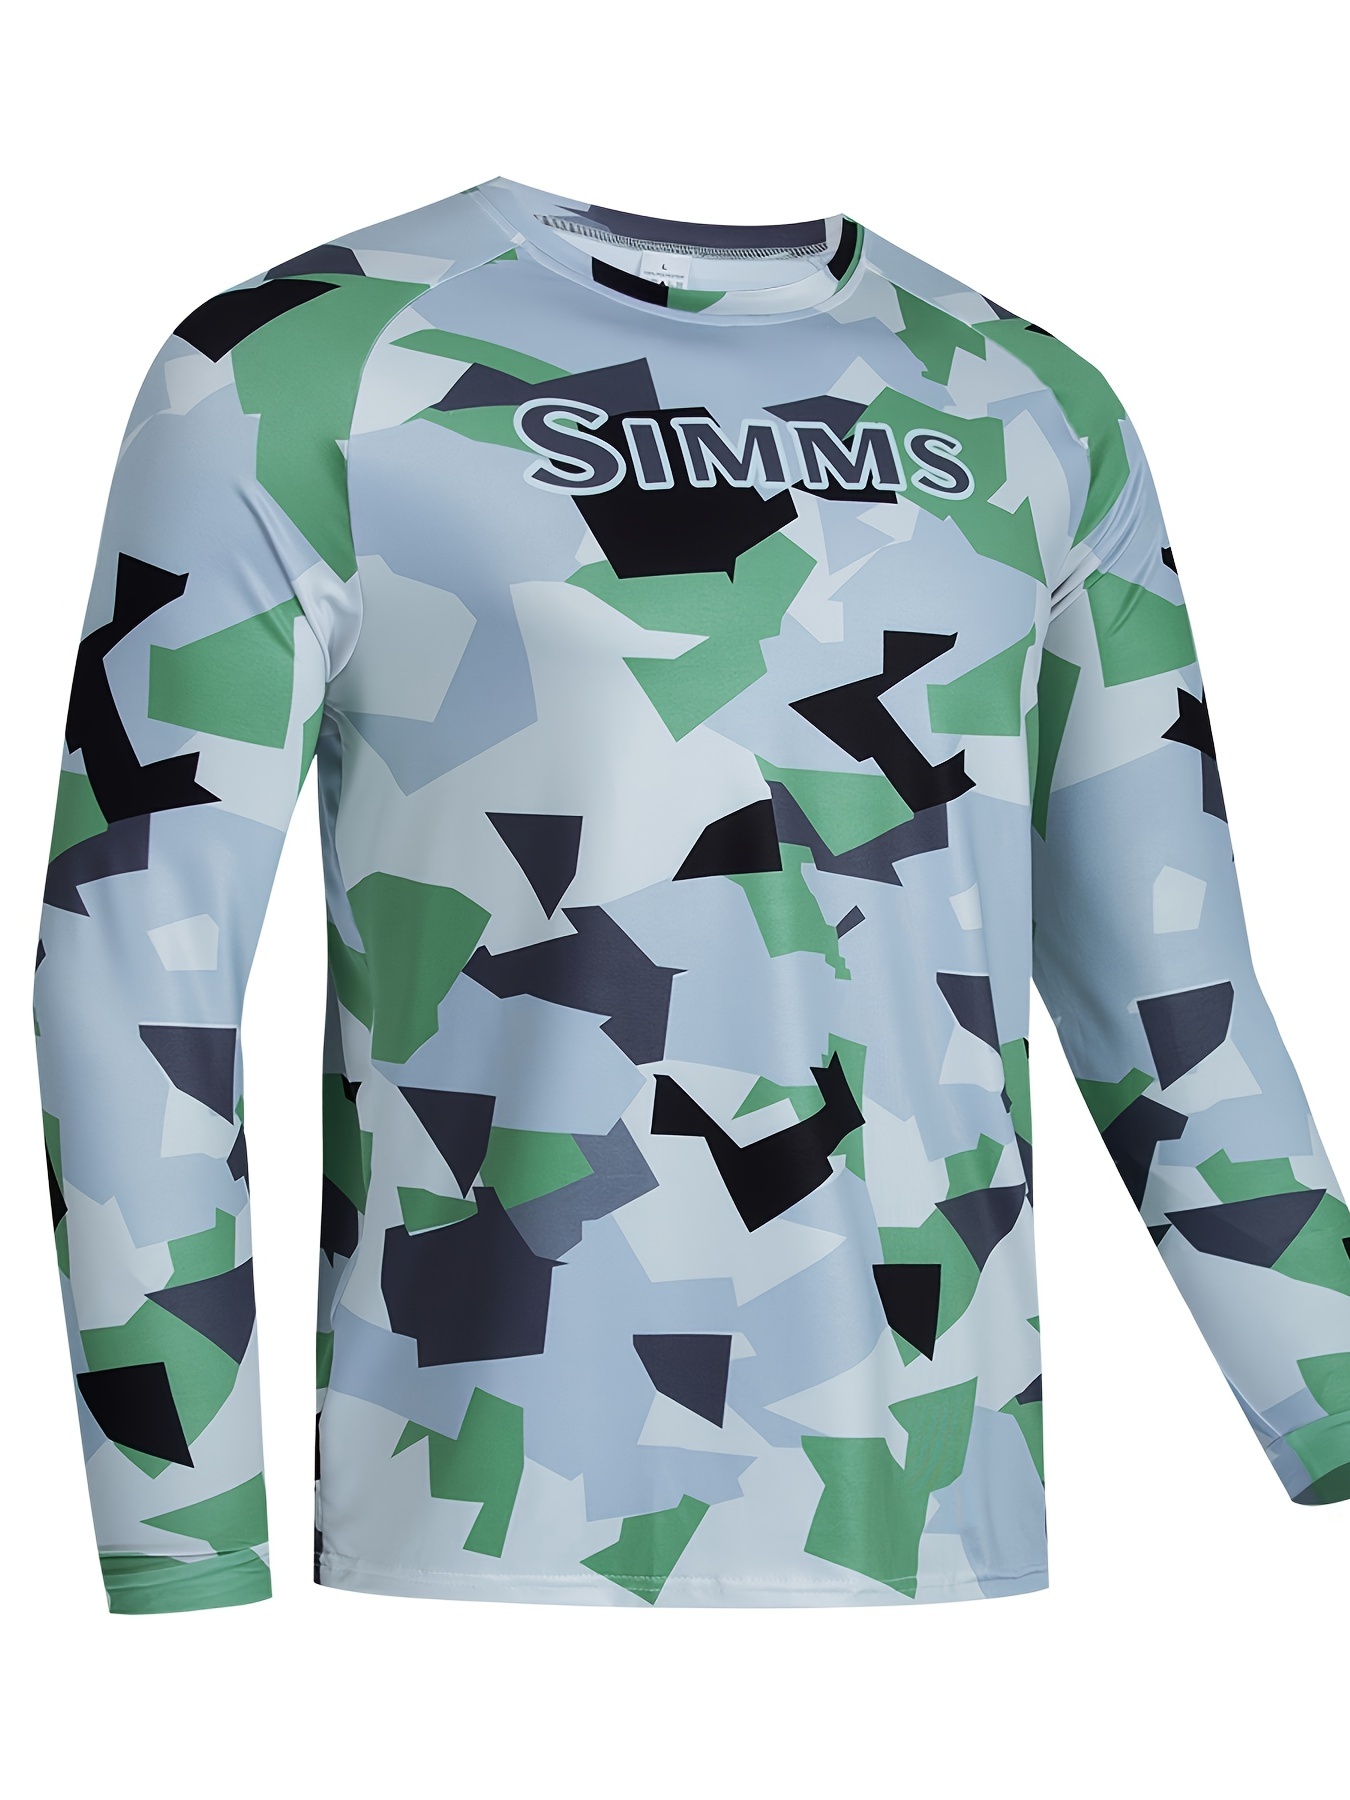 Simms SolarFlex Long-Sleeve Shirt for Men  Fishing shirts, Mens shirts, Mens  fishing shirts